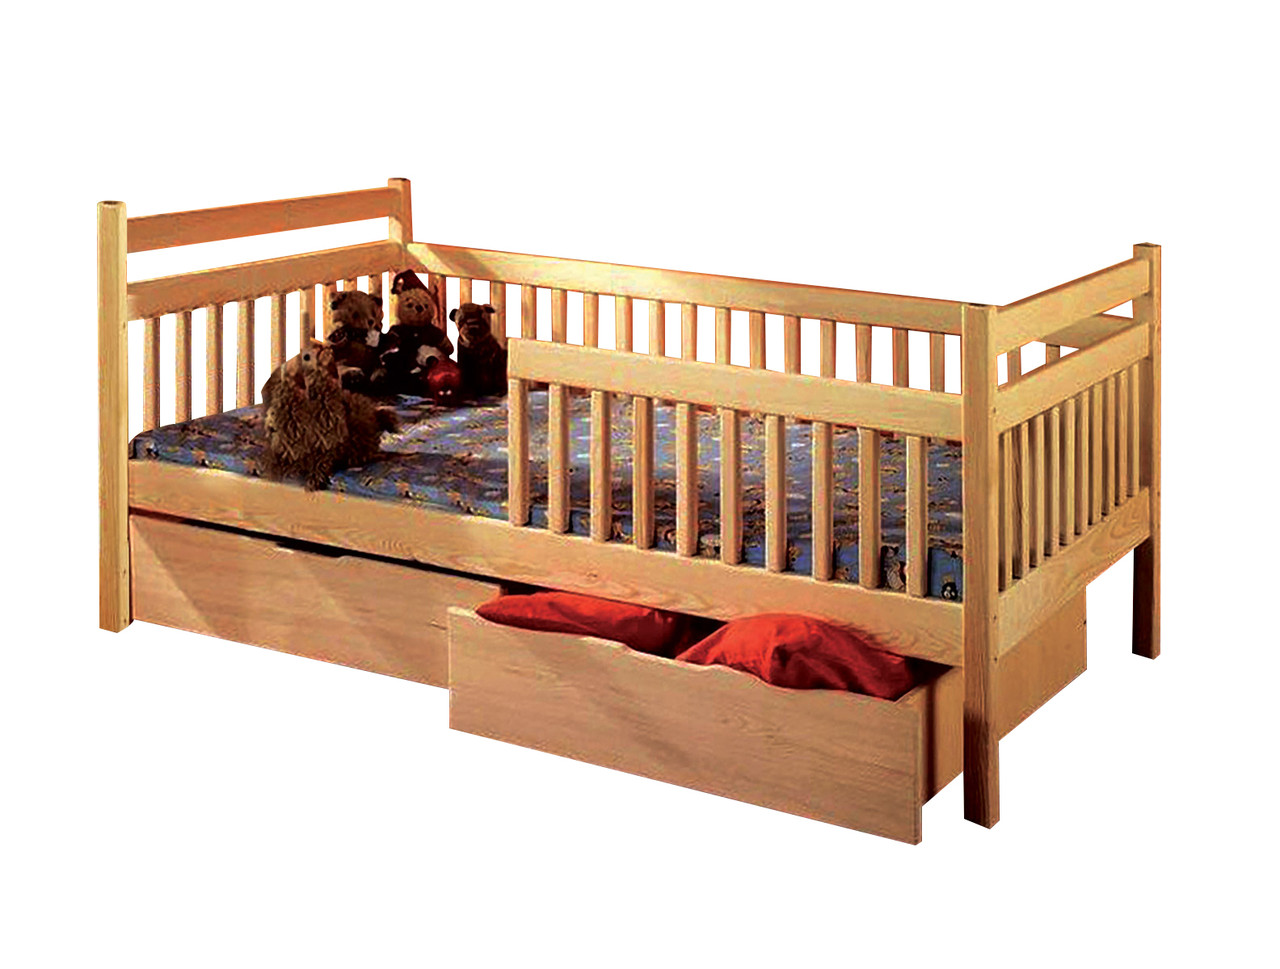 Дитяче ліжко "Буратино" (Drimka)